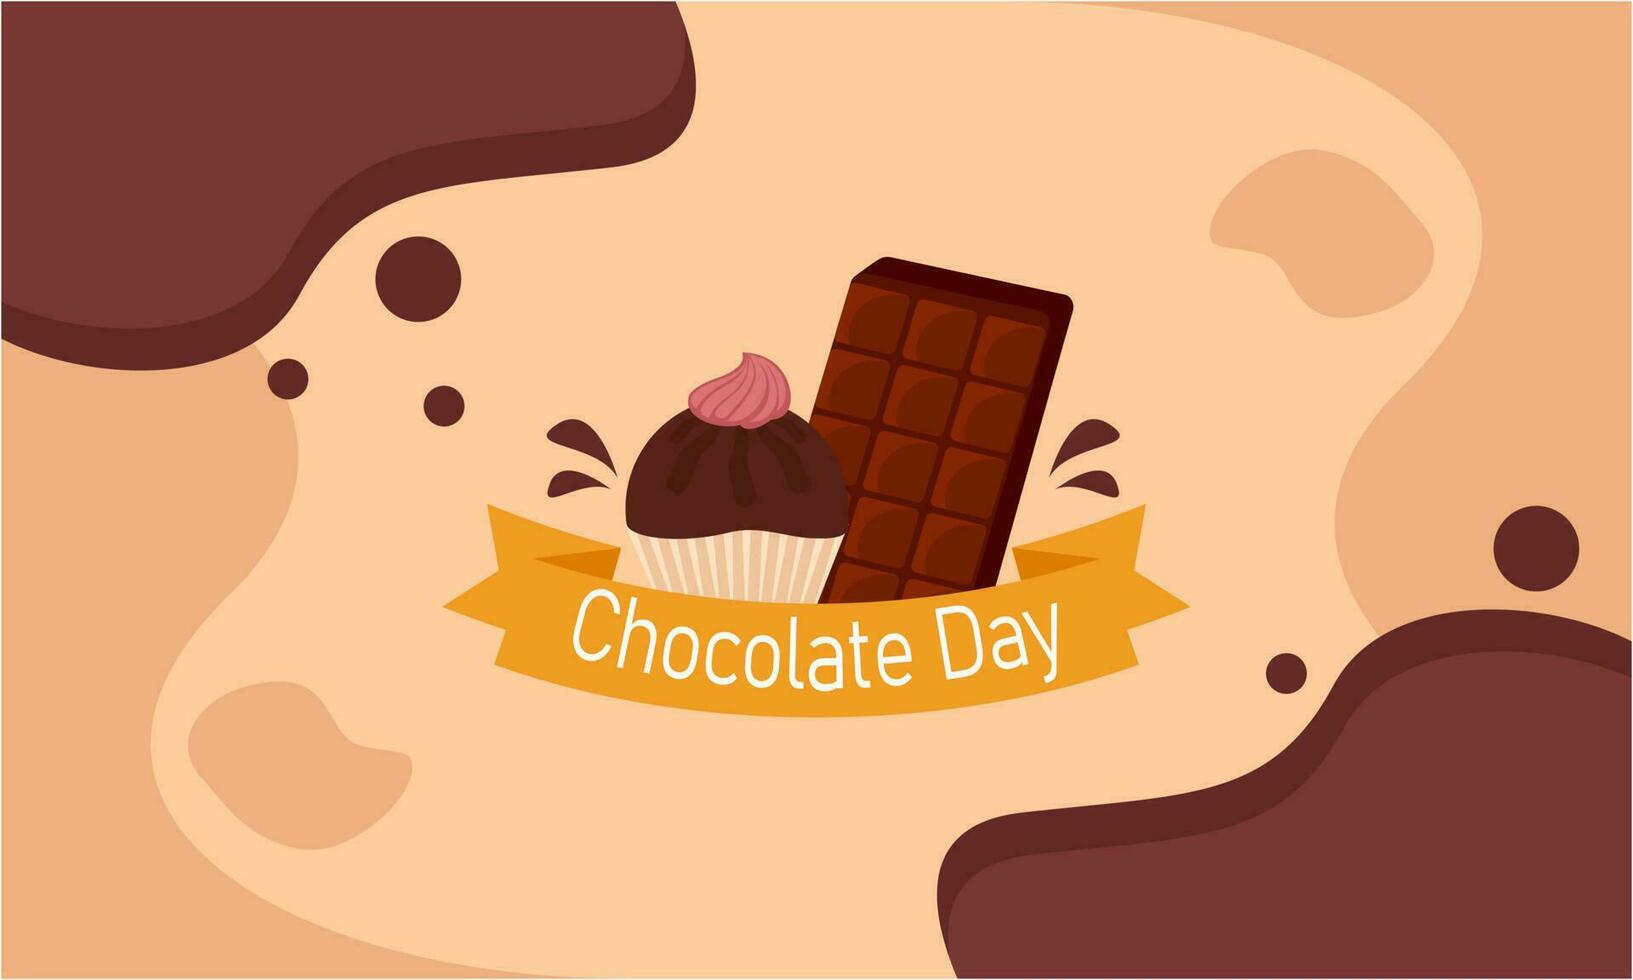 contento mundo chocolate día ilustración con chocolate logo vector